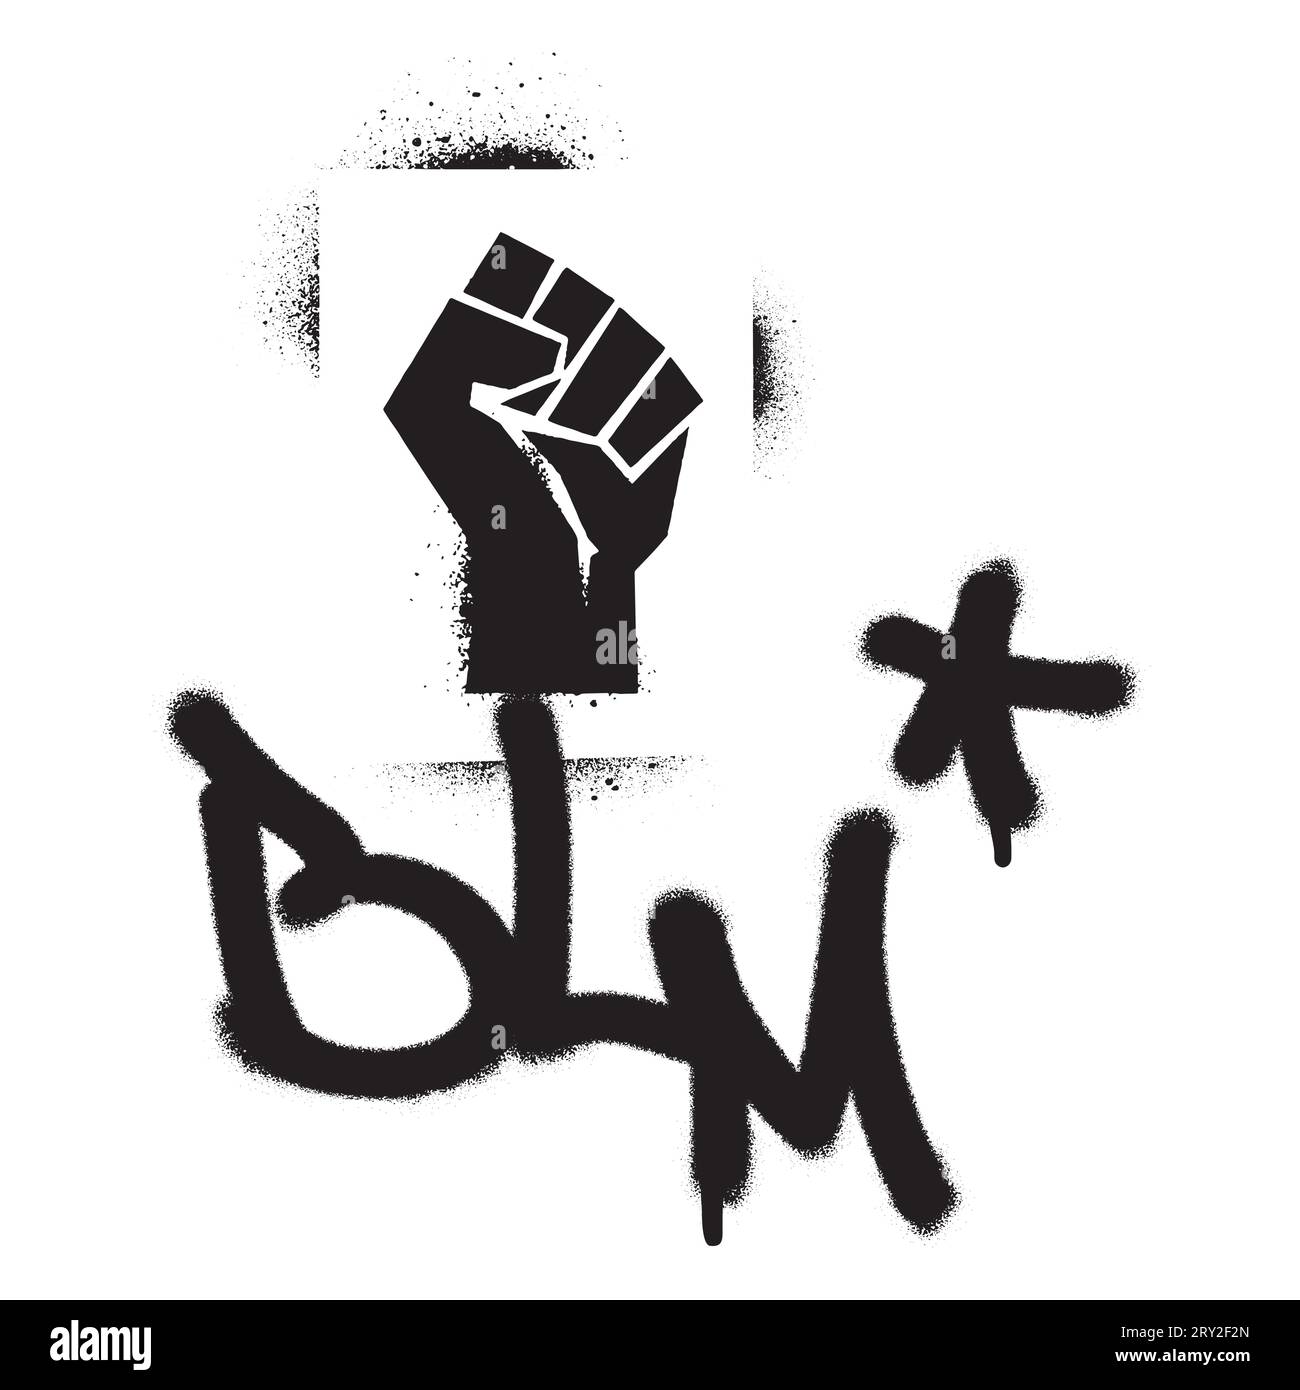 Stencil graffiti con vernice spray a pugno rialzato e abbreviazione BLM BLACK LIVES MATTER citazione. Movimento antirazzista. Illustrazione Vettoriale